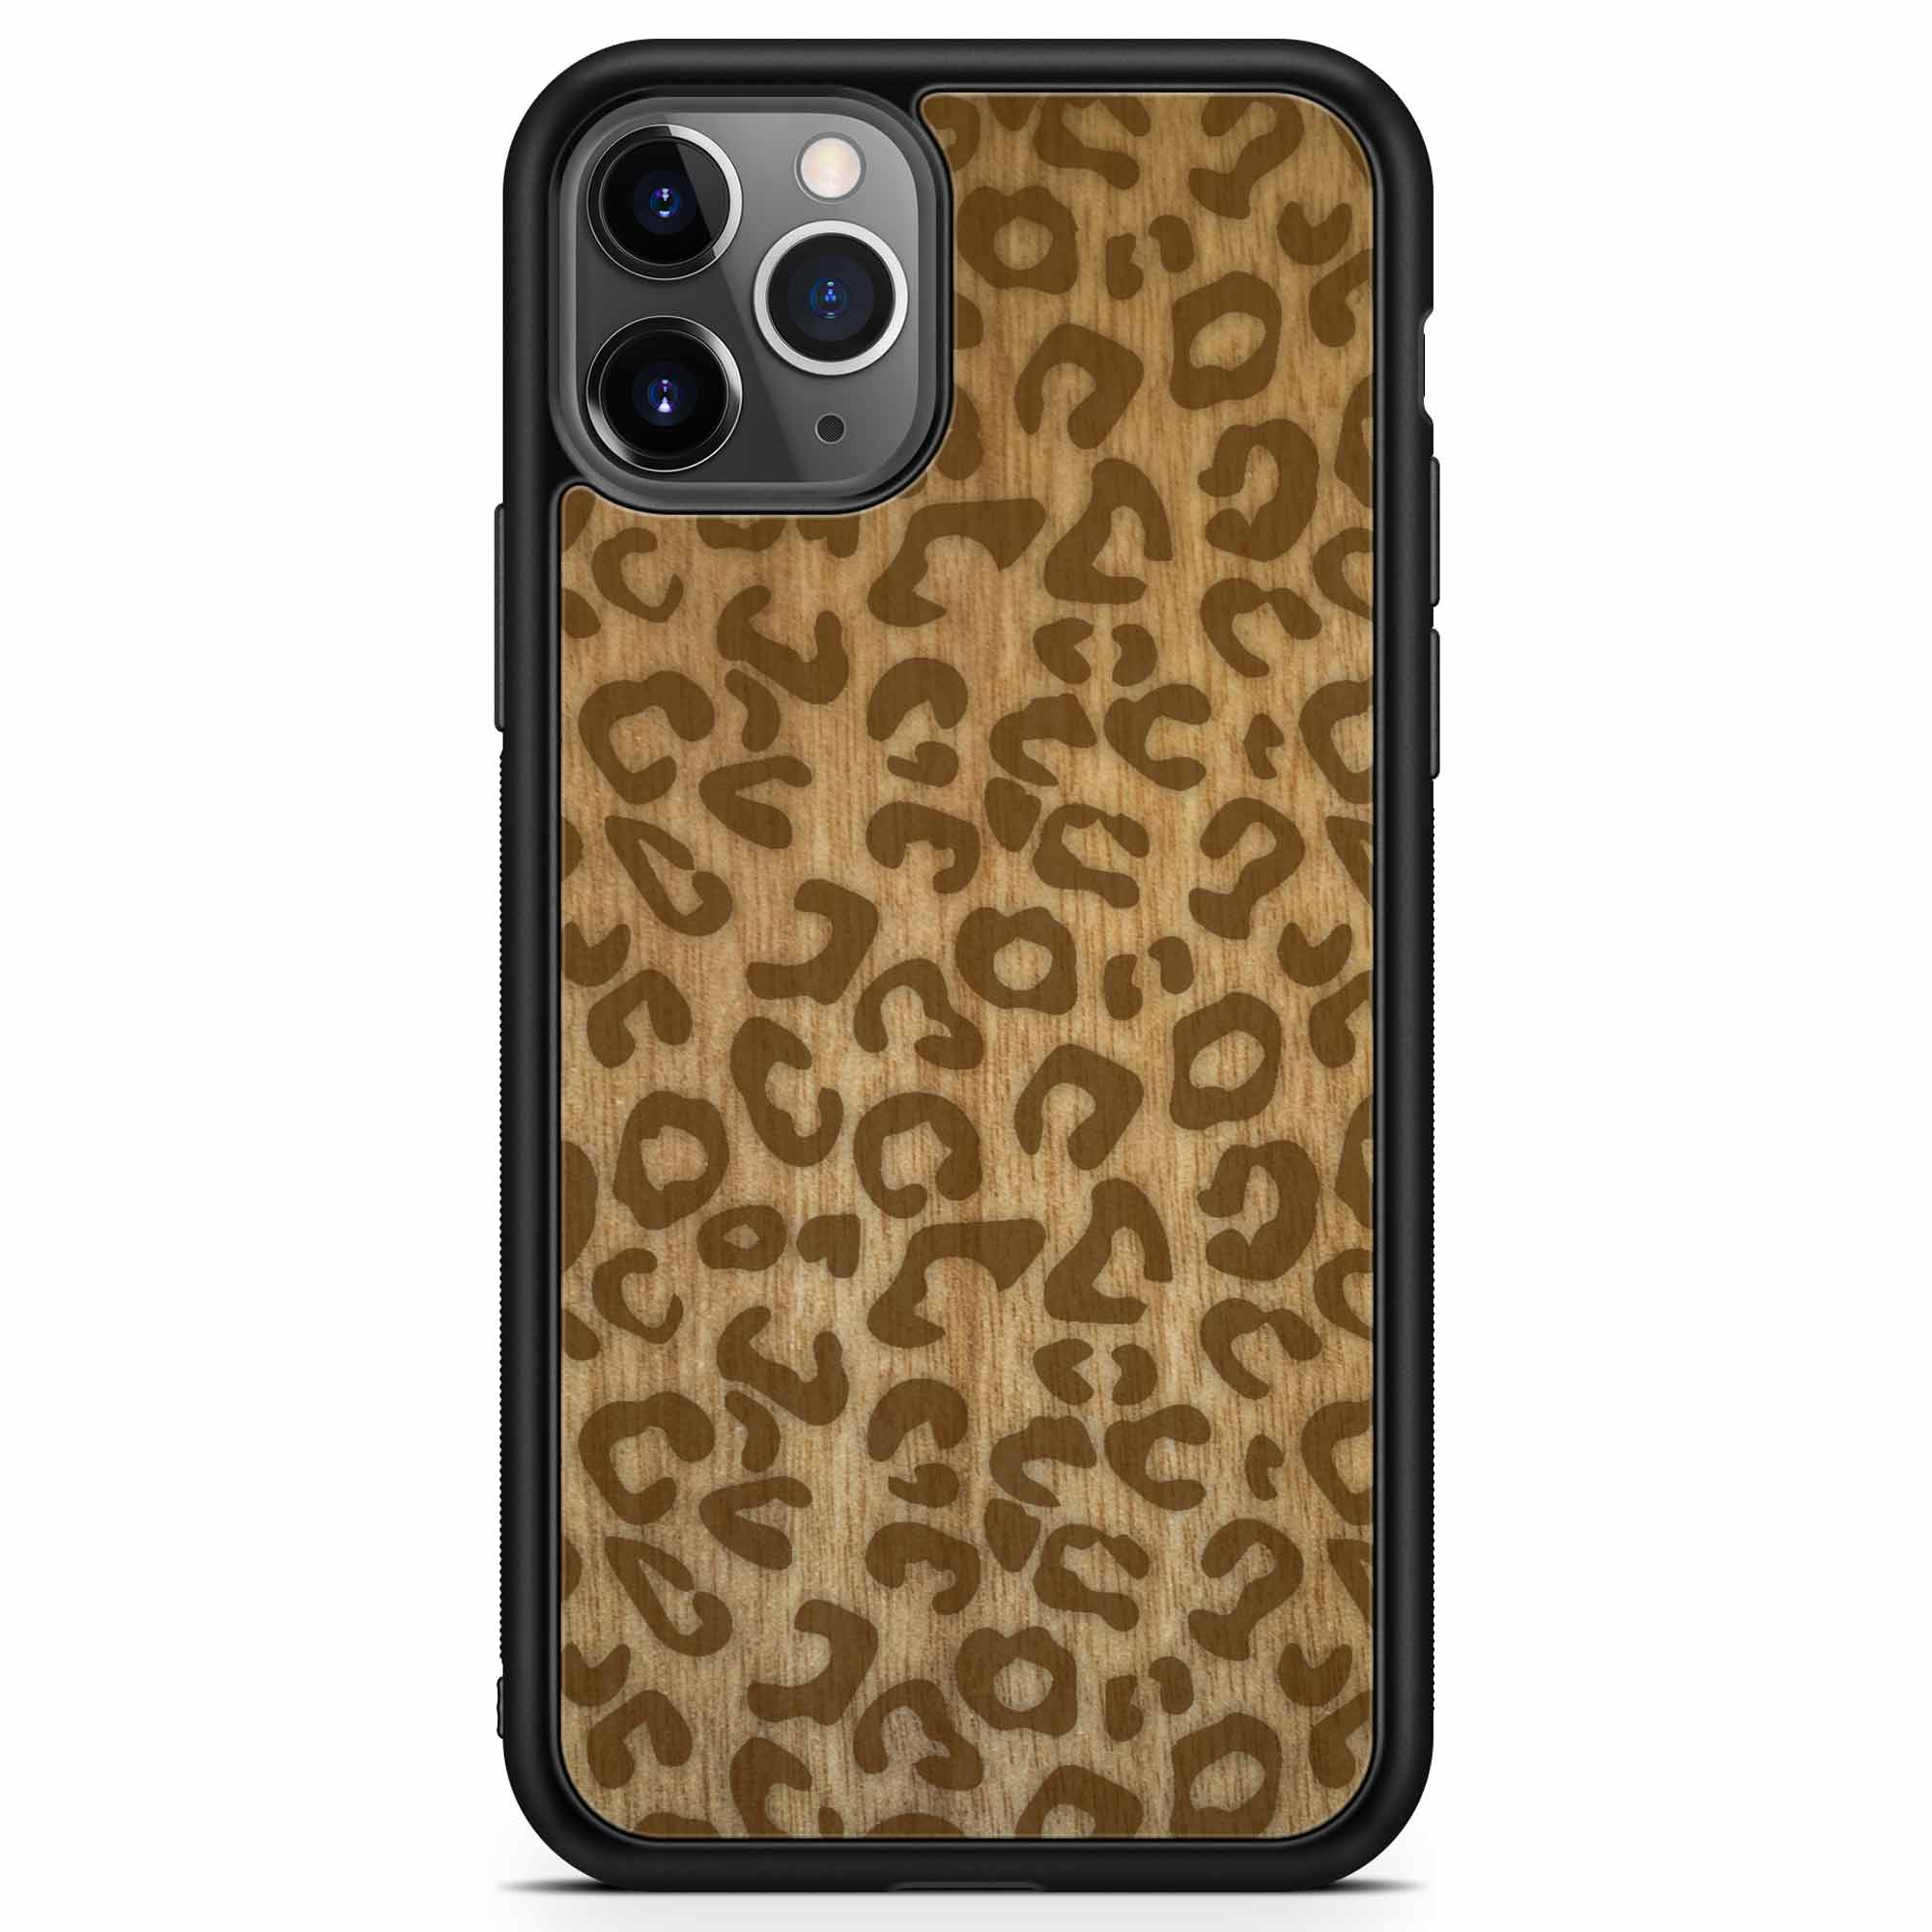 Custodia per telefono in legno con stampa ghepardo per iPhone 11 Pro Max